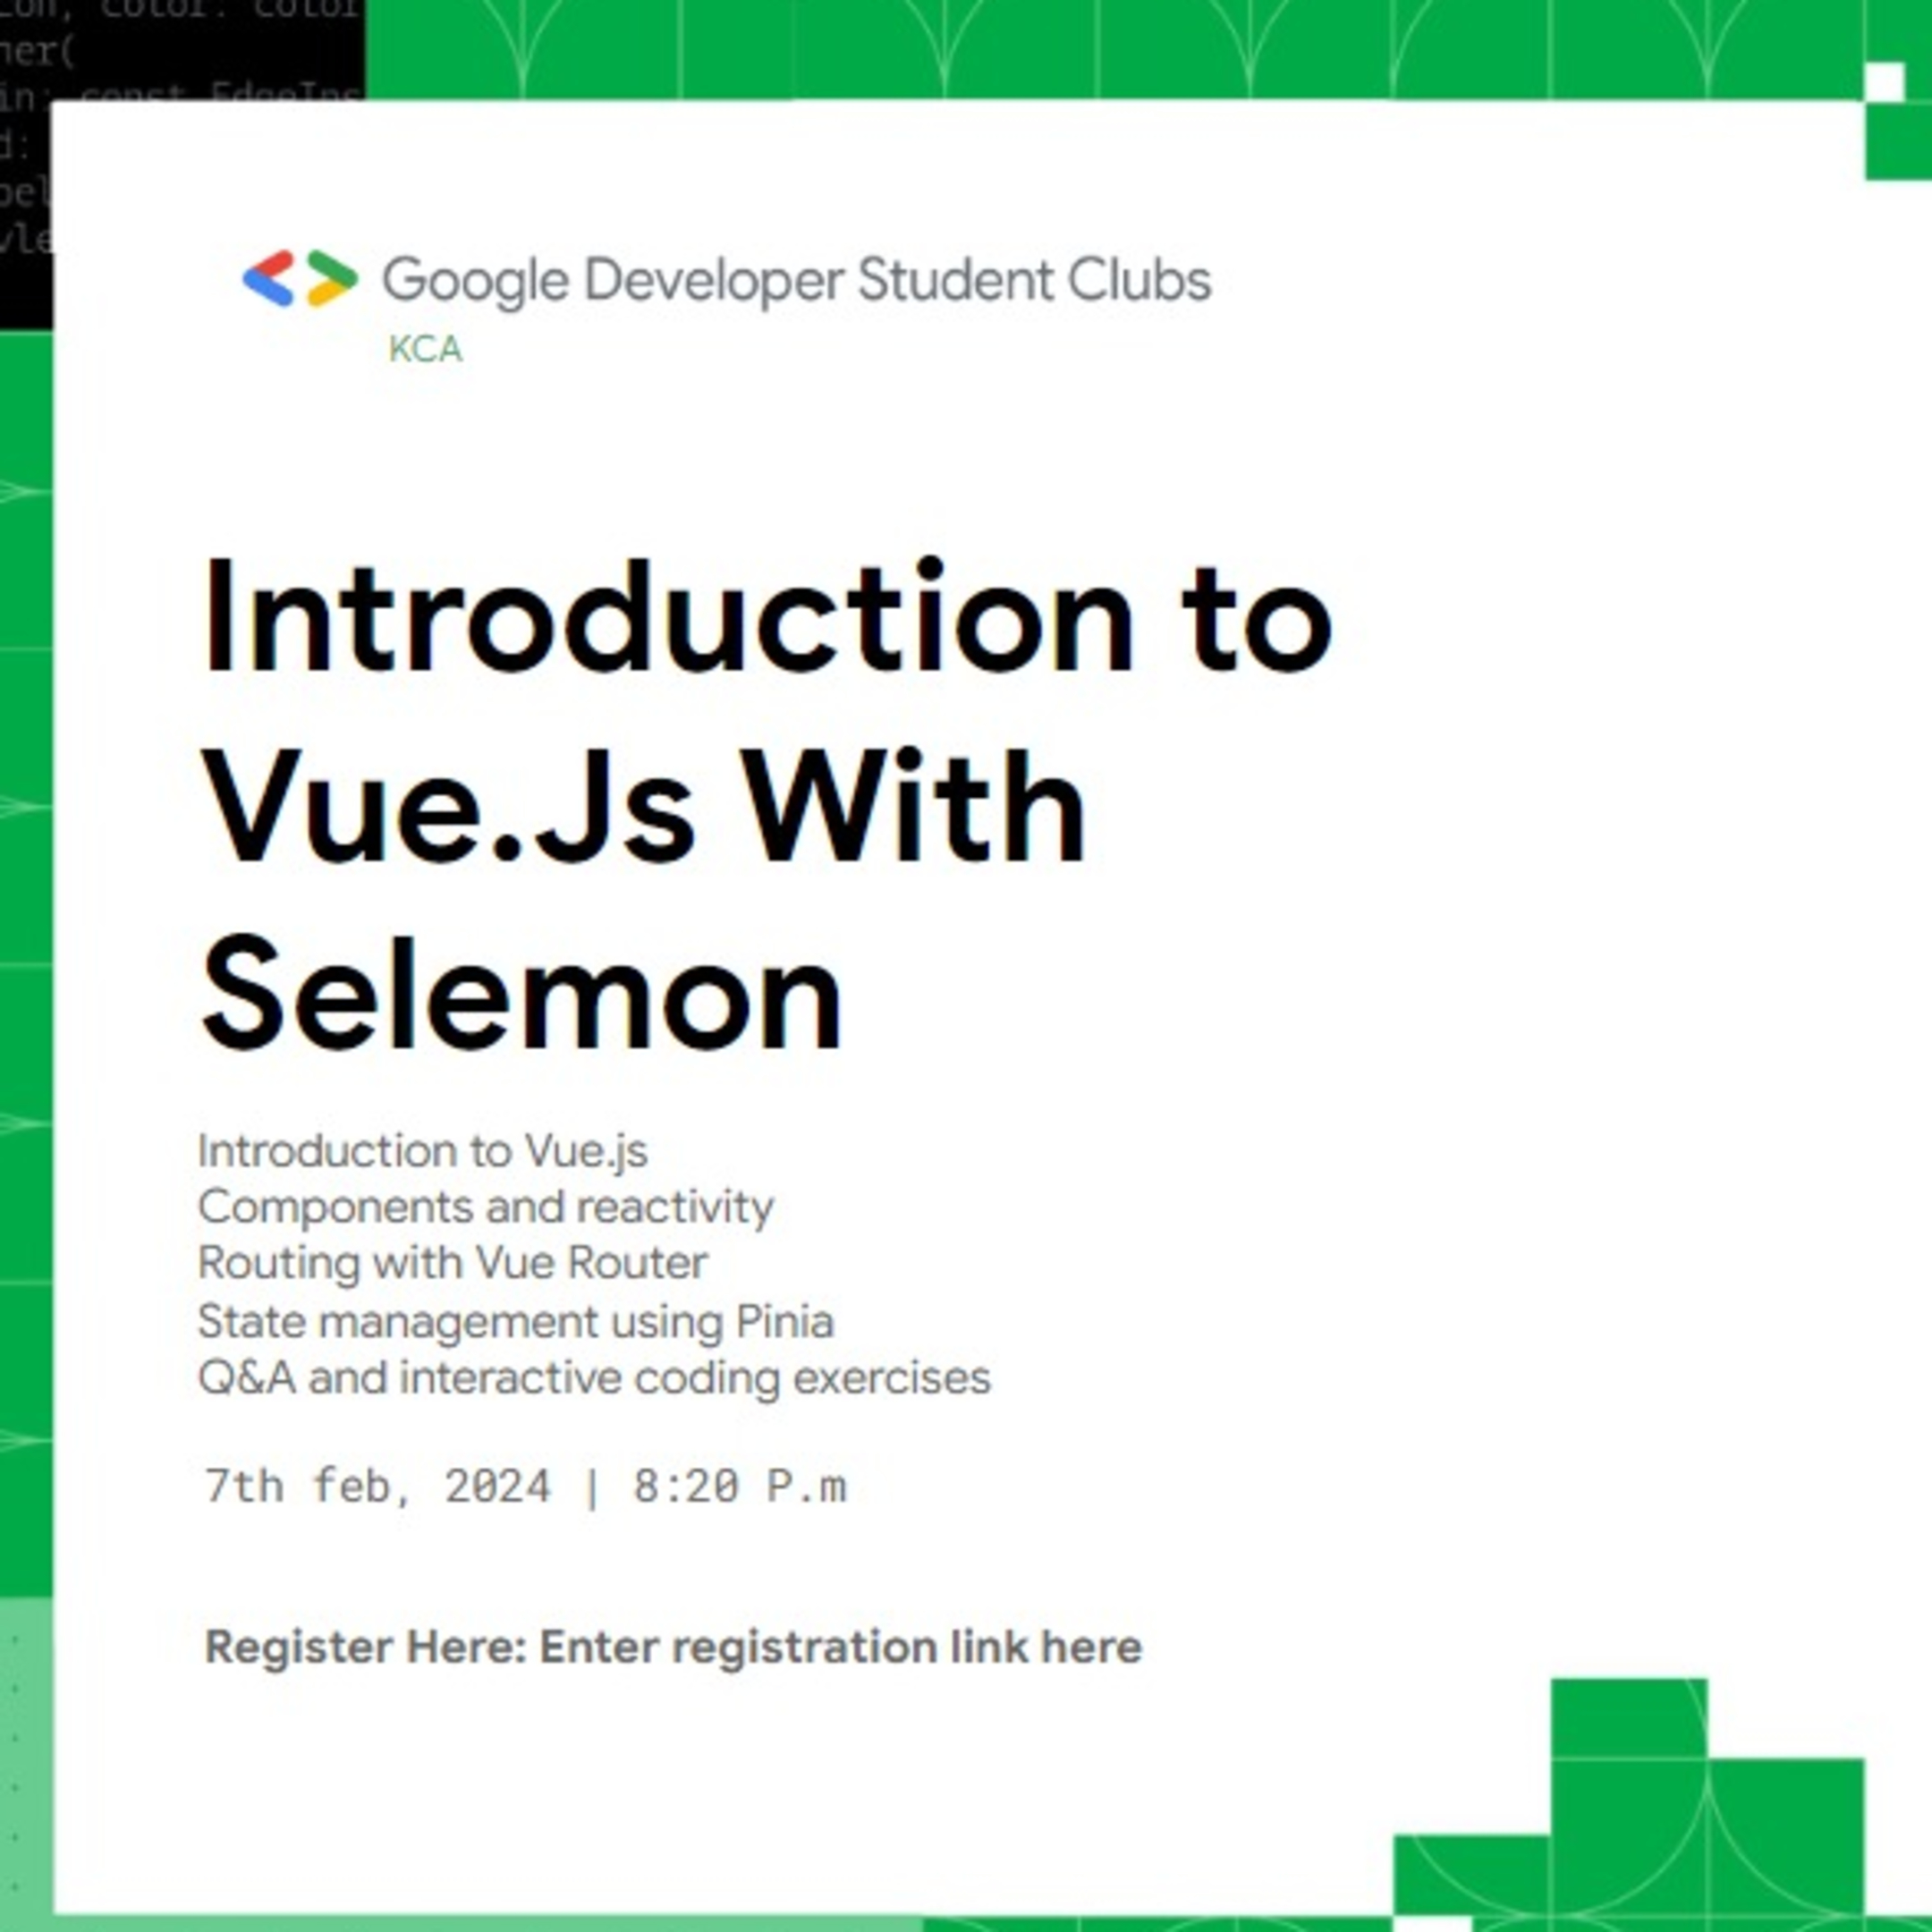 See We are hosting Selemon for a Vue.js at Google Developer